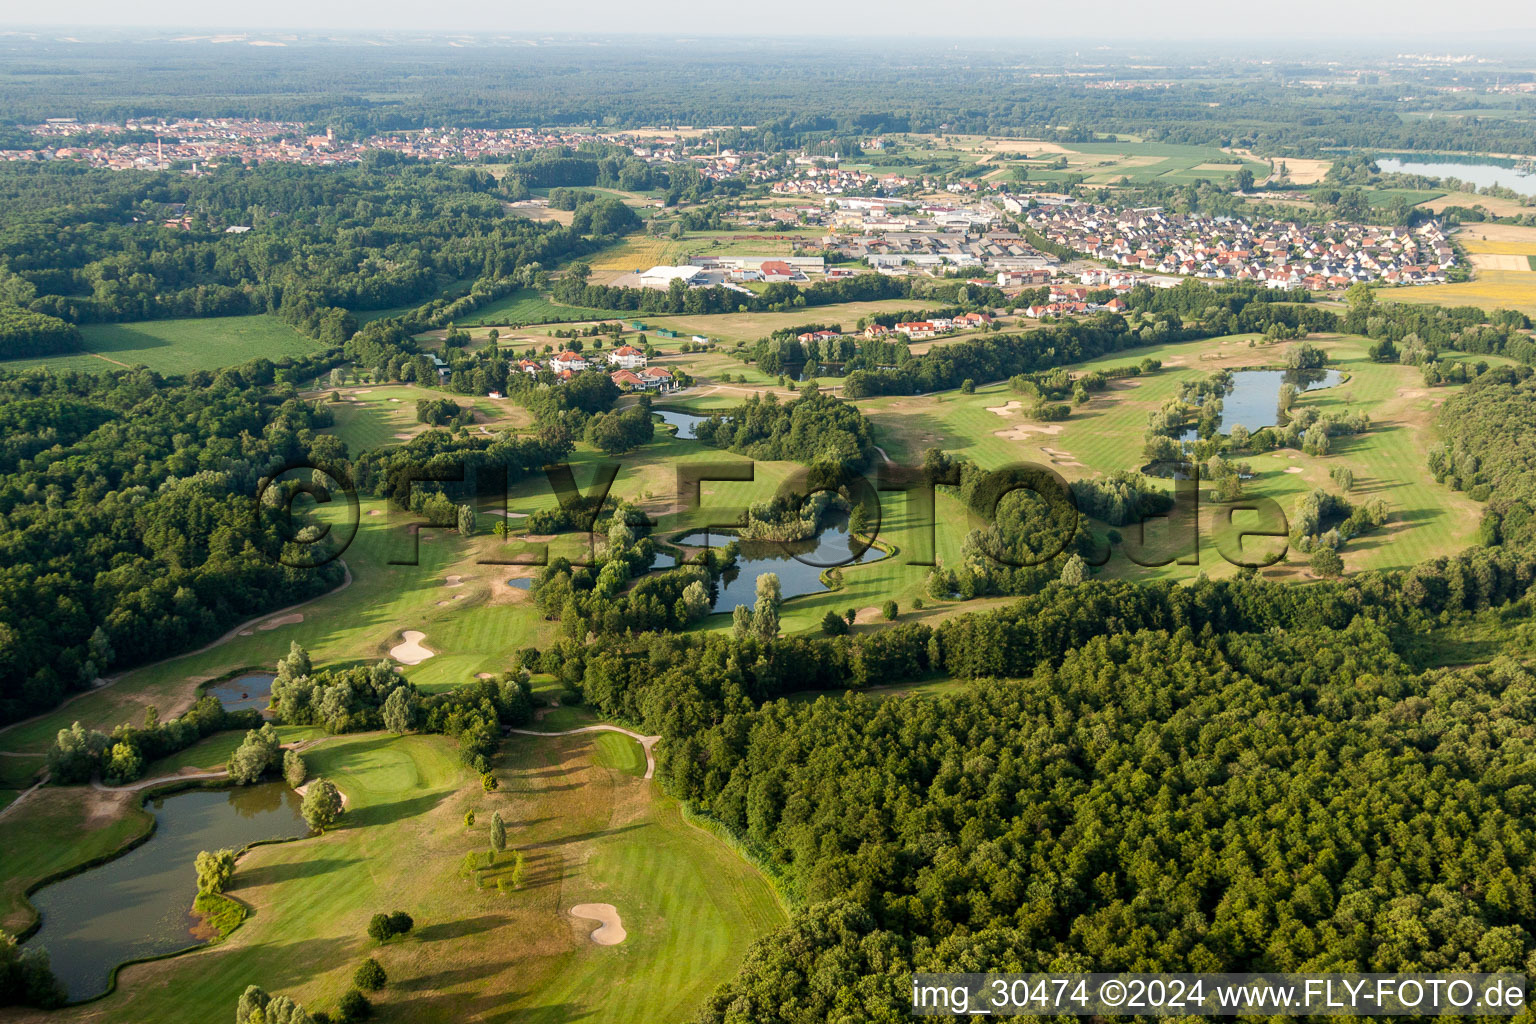 Luftbild von Gelände des Golfplatz Golfclub Soufflenheim Baden-Baden in Soufflenheim in Grand Est im Bundesland Bas-Rhin, Frankreich